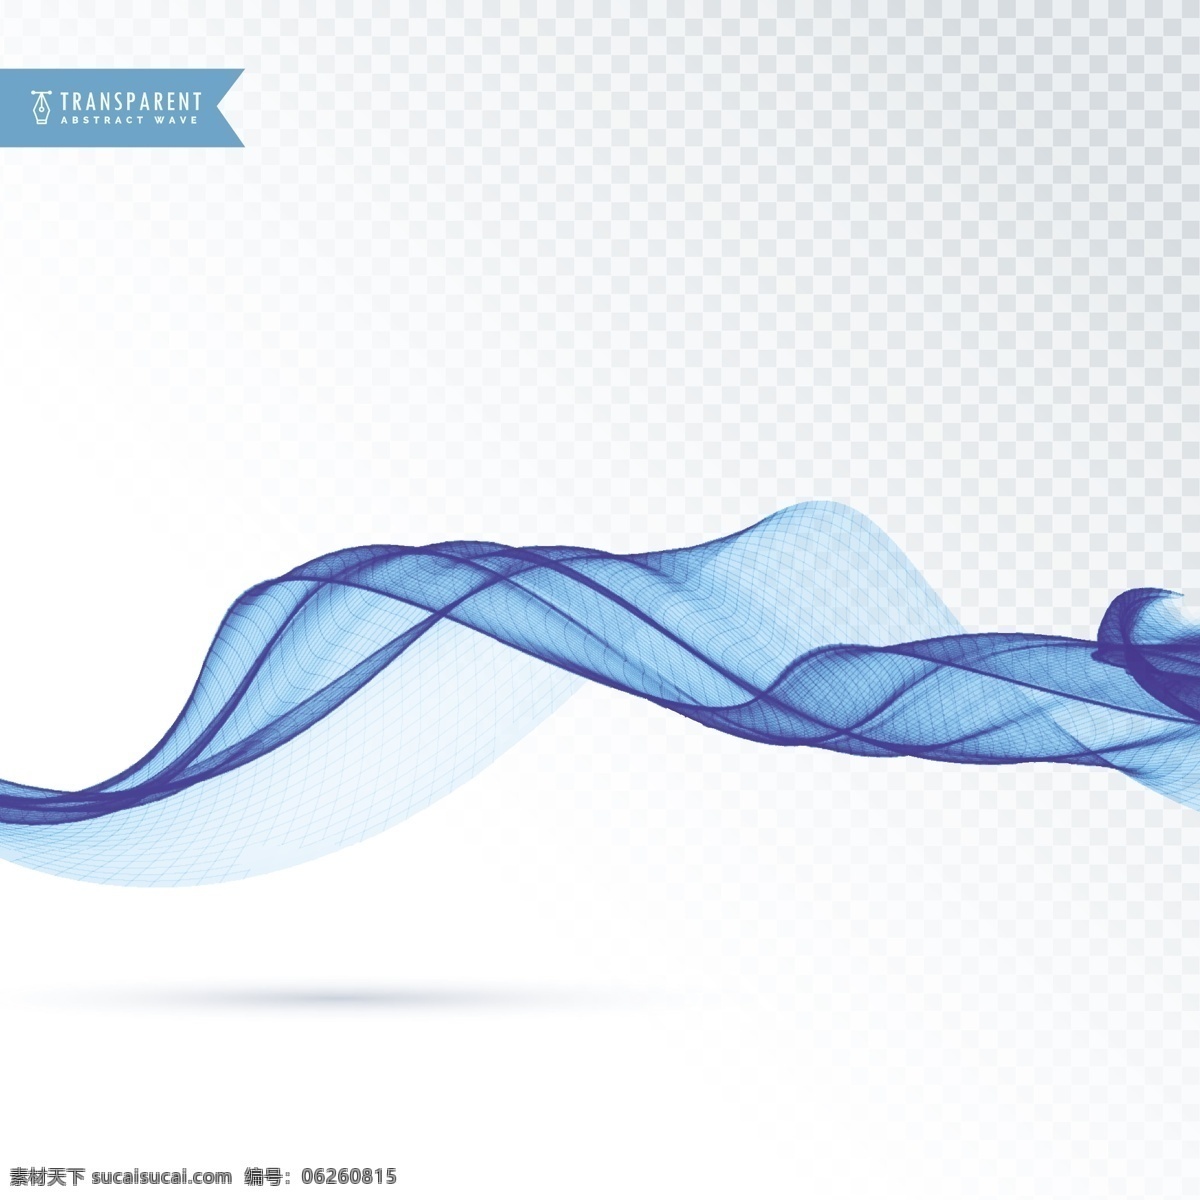 现代 流动 形态 背景 商业 抽象 线条 波浪 蓝色 形状 烟雾 优雅 能量 漩涡 效果 透明 抽象的形状 运动 柔软 动态